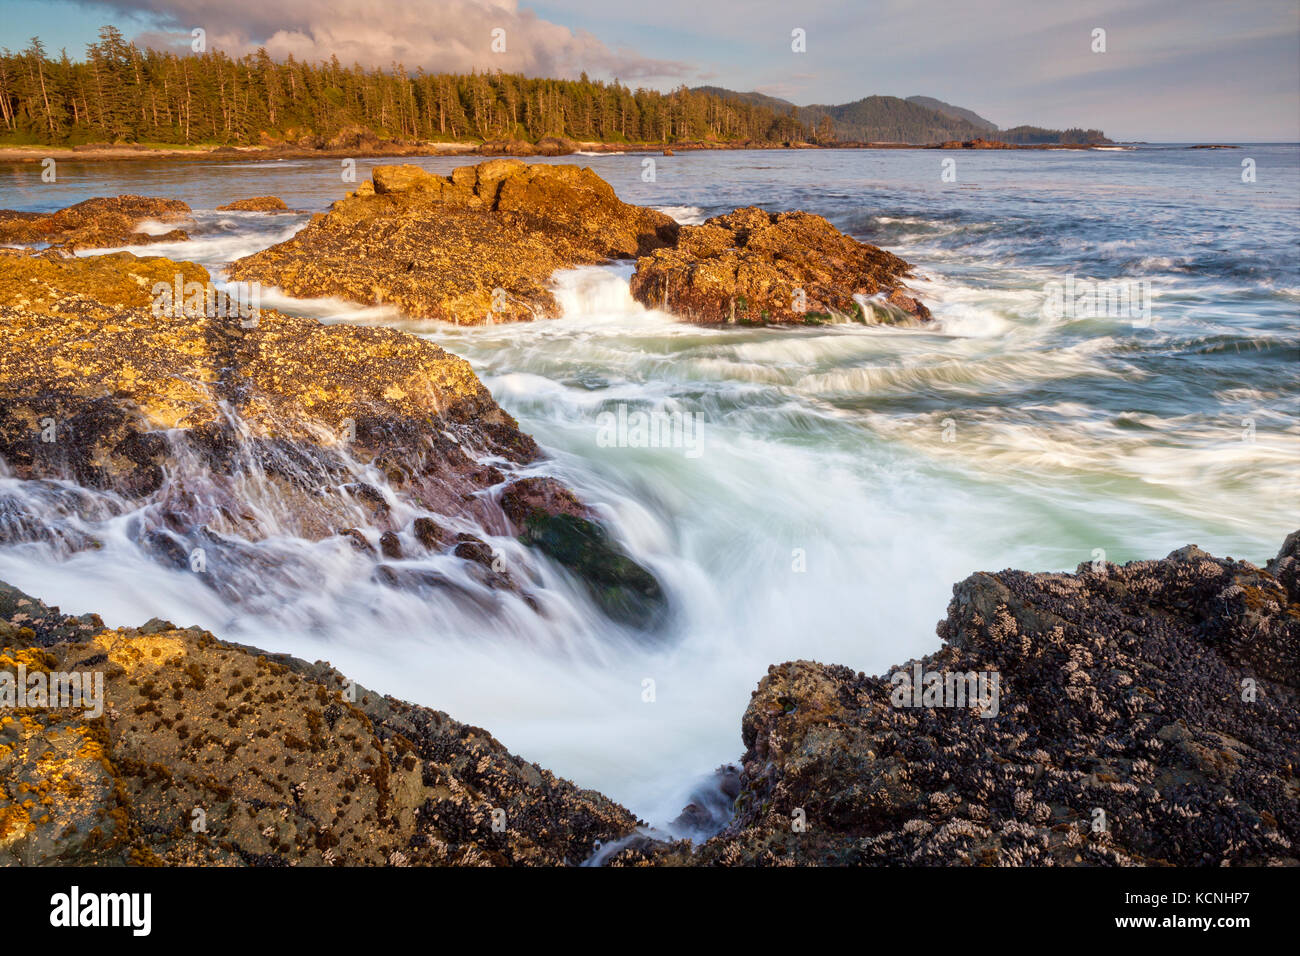 La côte ouest sauvage du nord de l'île de Vancouver, près de Cape Scott provincial park, British Columbia, canada, vagues se brisant le long littoral photographié dans une longue exposition Banque D'Images